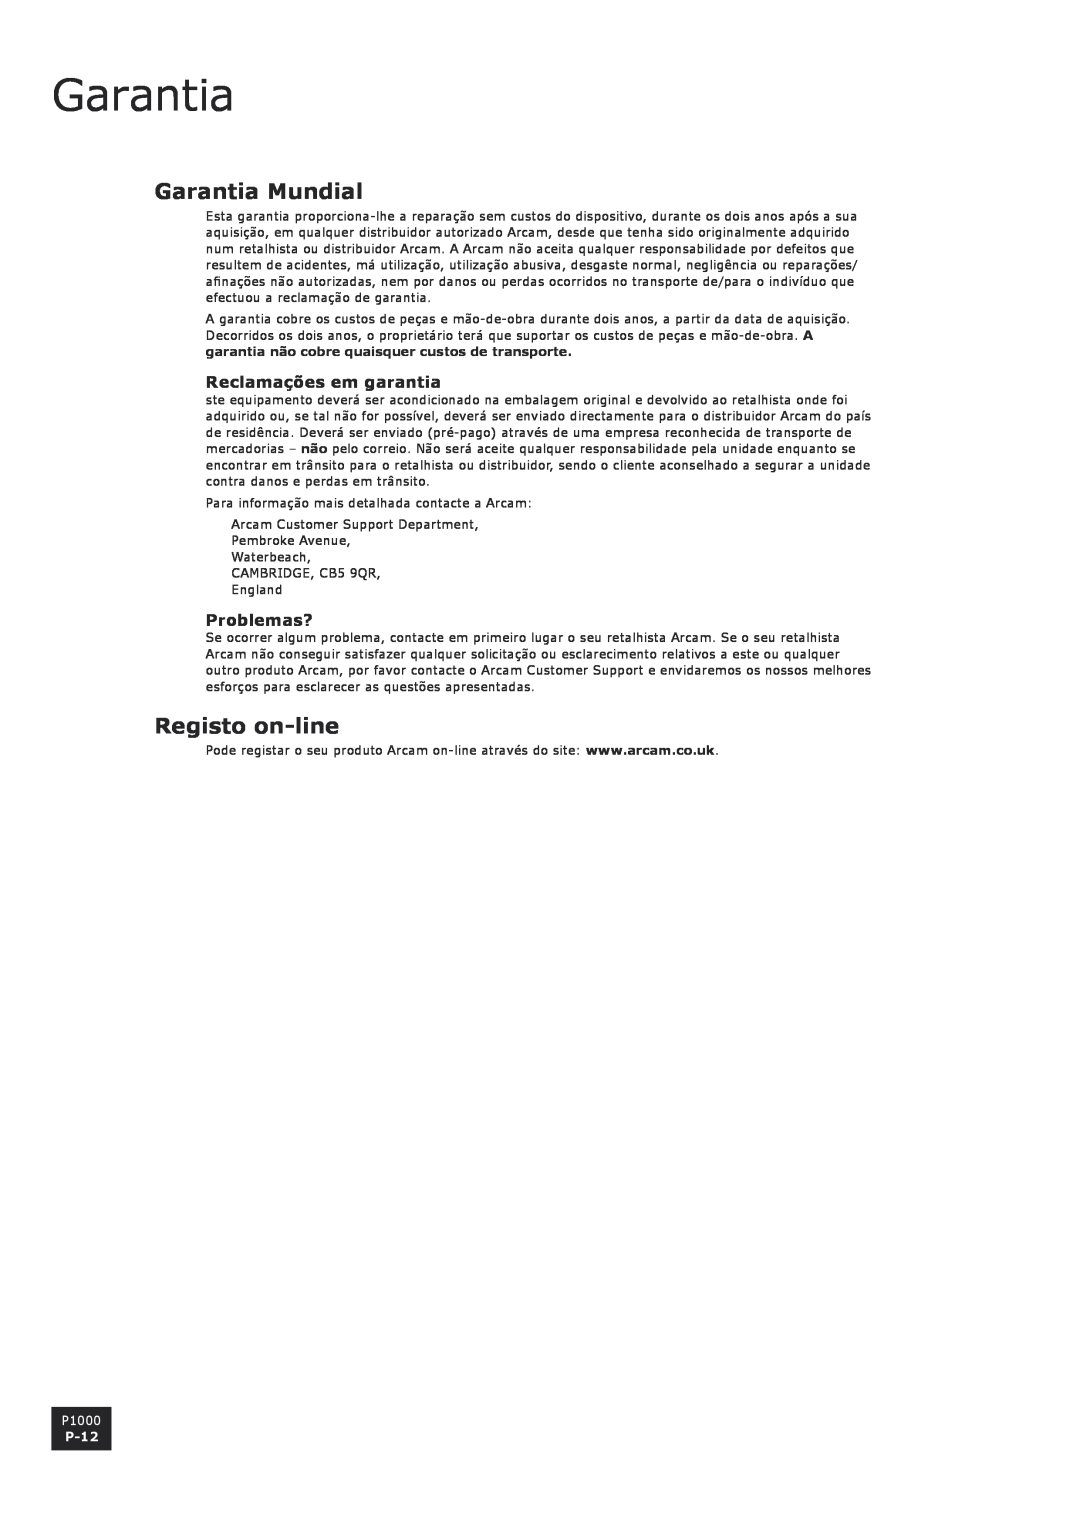 Arcam P1000 manual Garantia Mundial, Registo on-line, Reclamações em garantia, Problemas?, P-12 